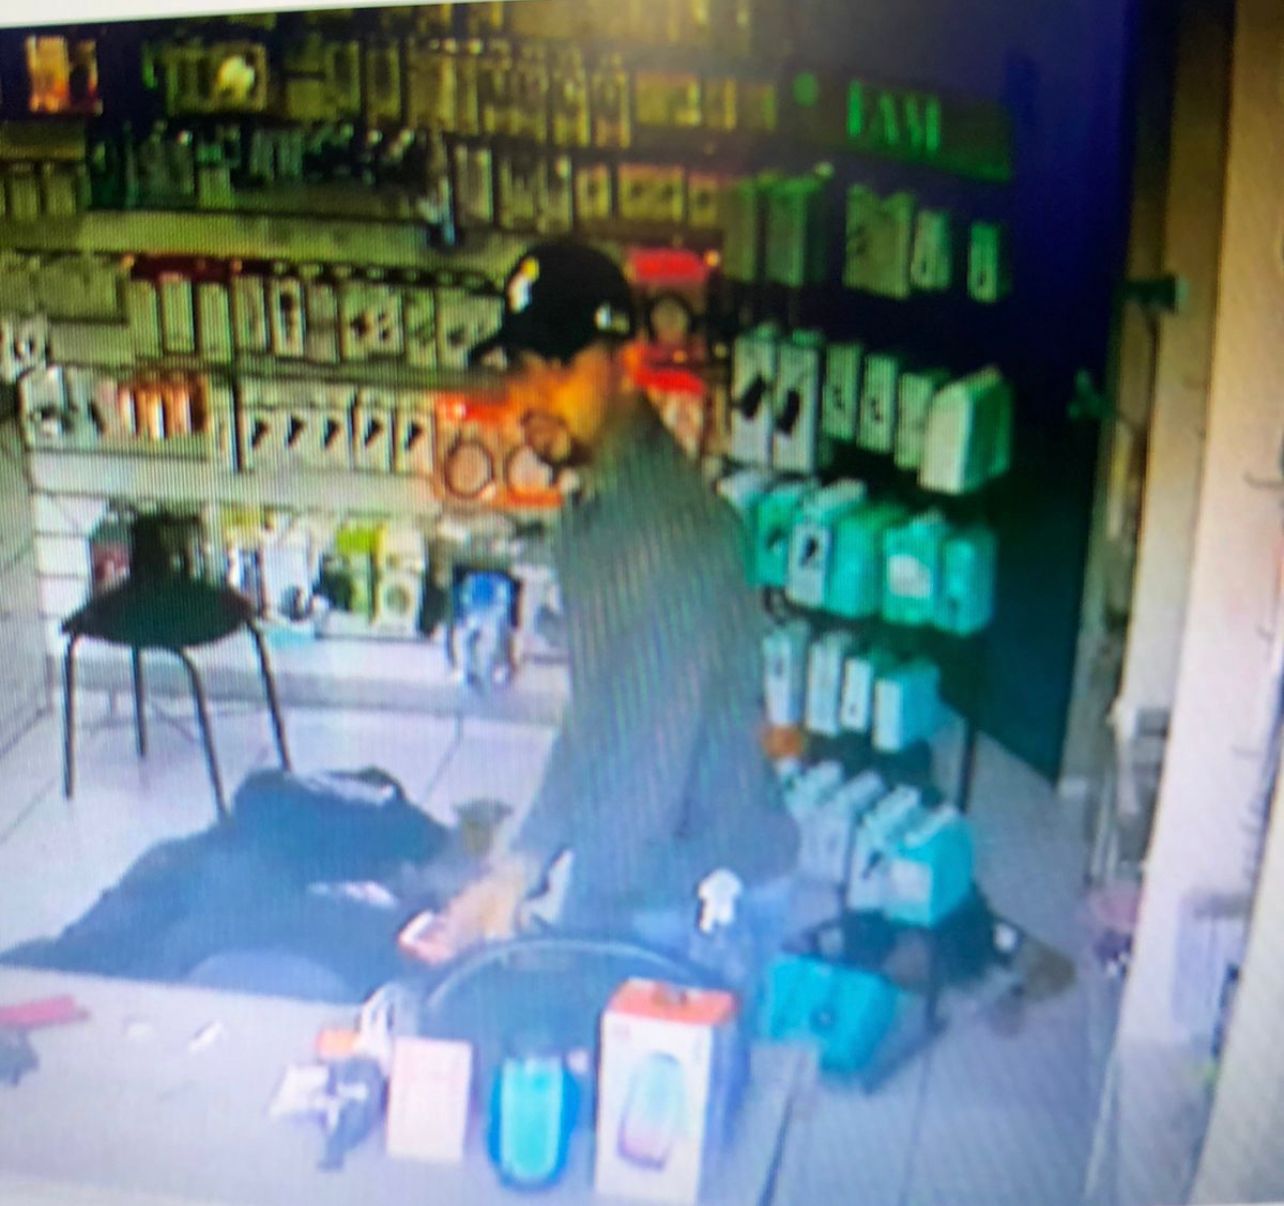 Imagem do possível suspeito do assalto a loja é divulgada nas redes sociais (Foto: Reprodução/ WhatsApp)